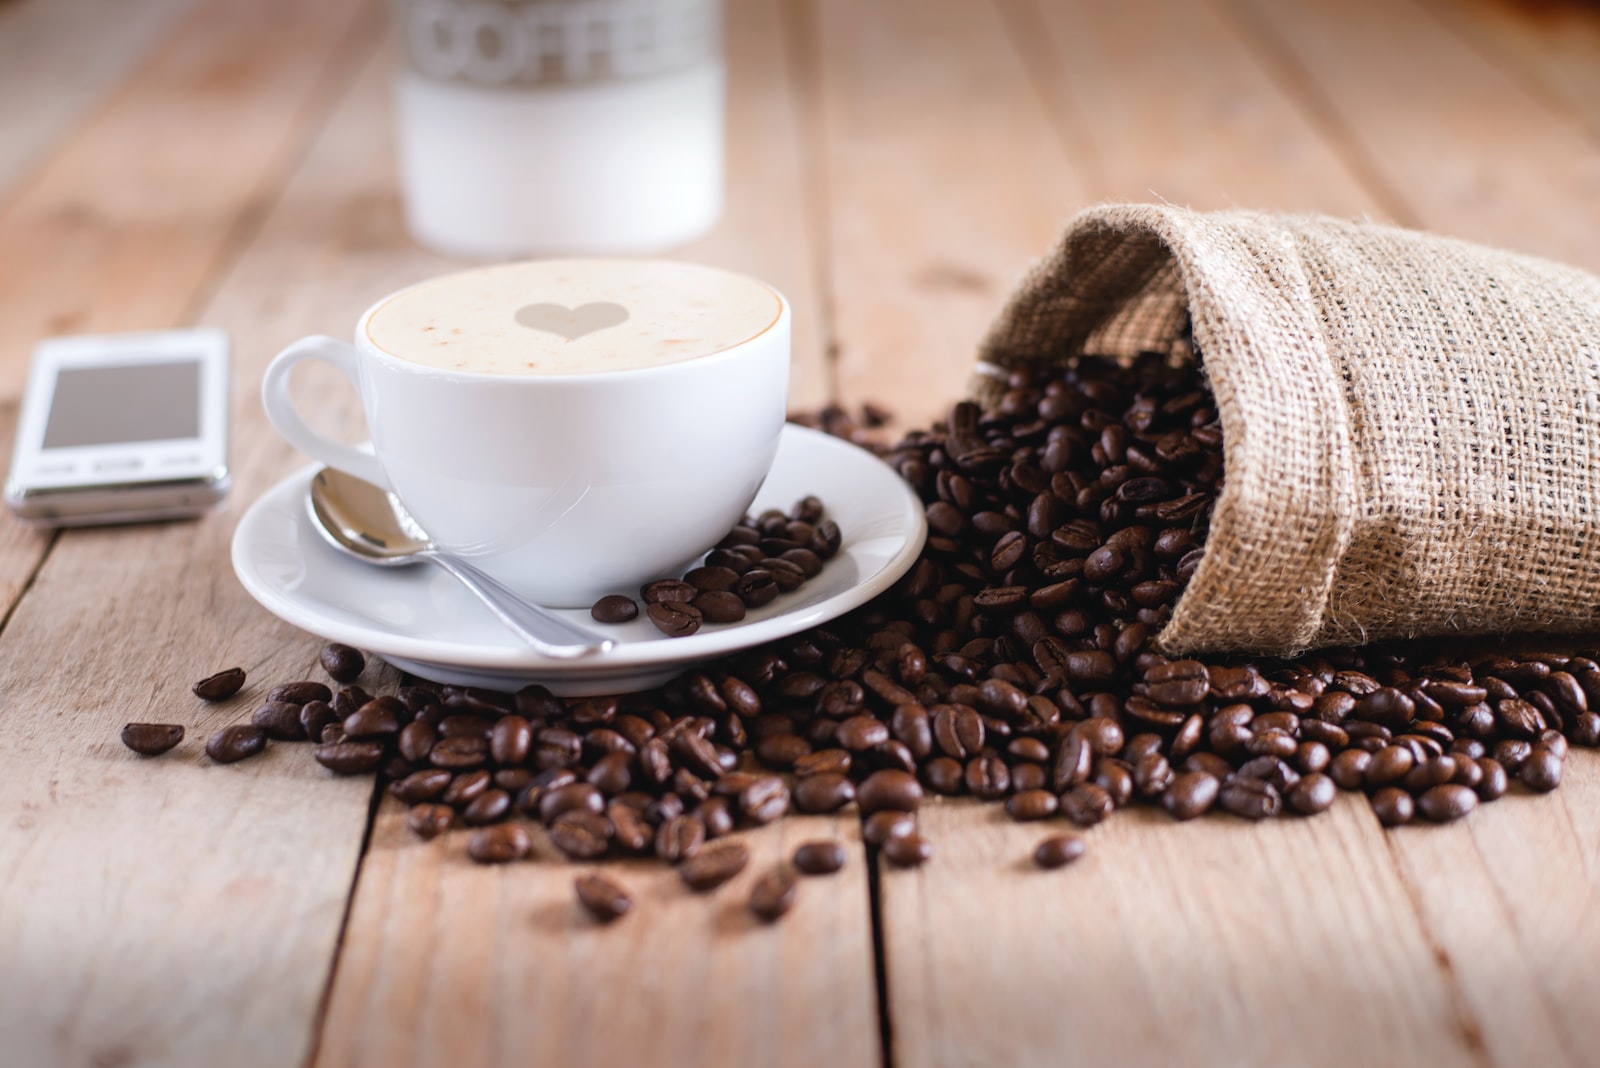 Les types de café et les 5 manières les plus courantes de le préparer